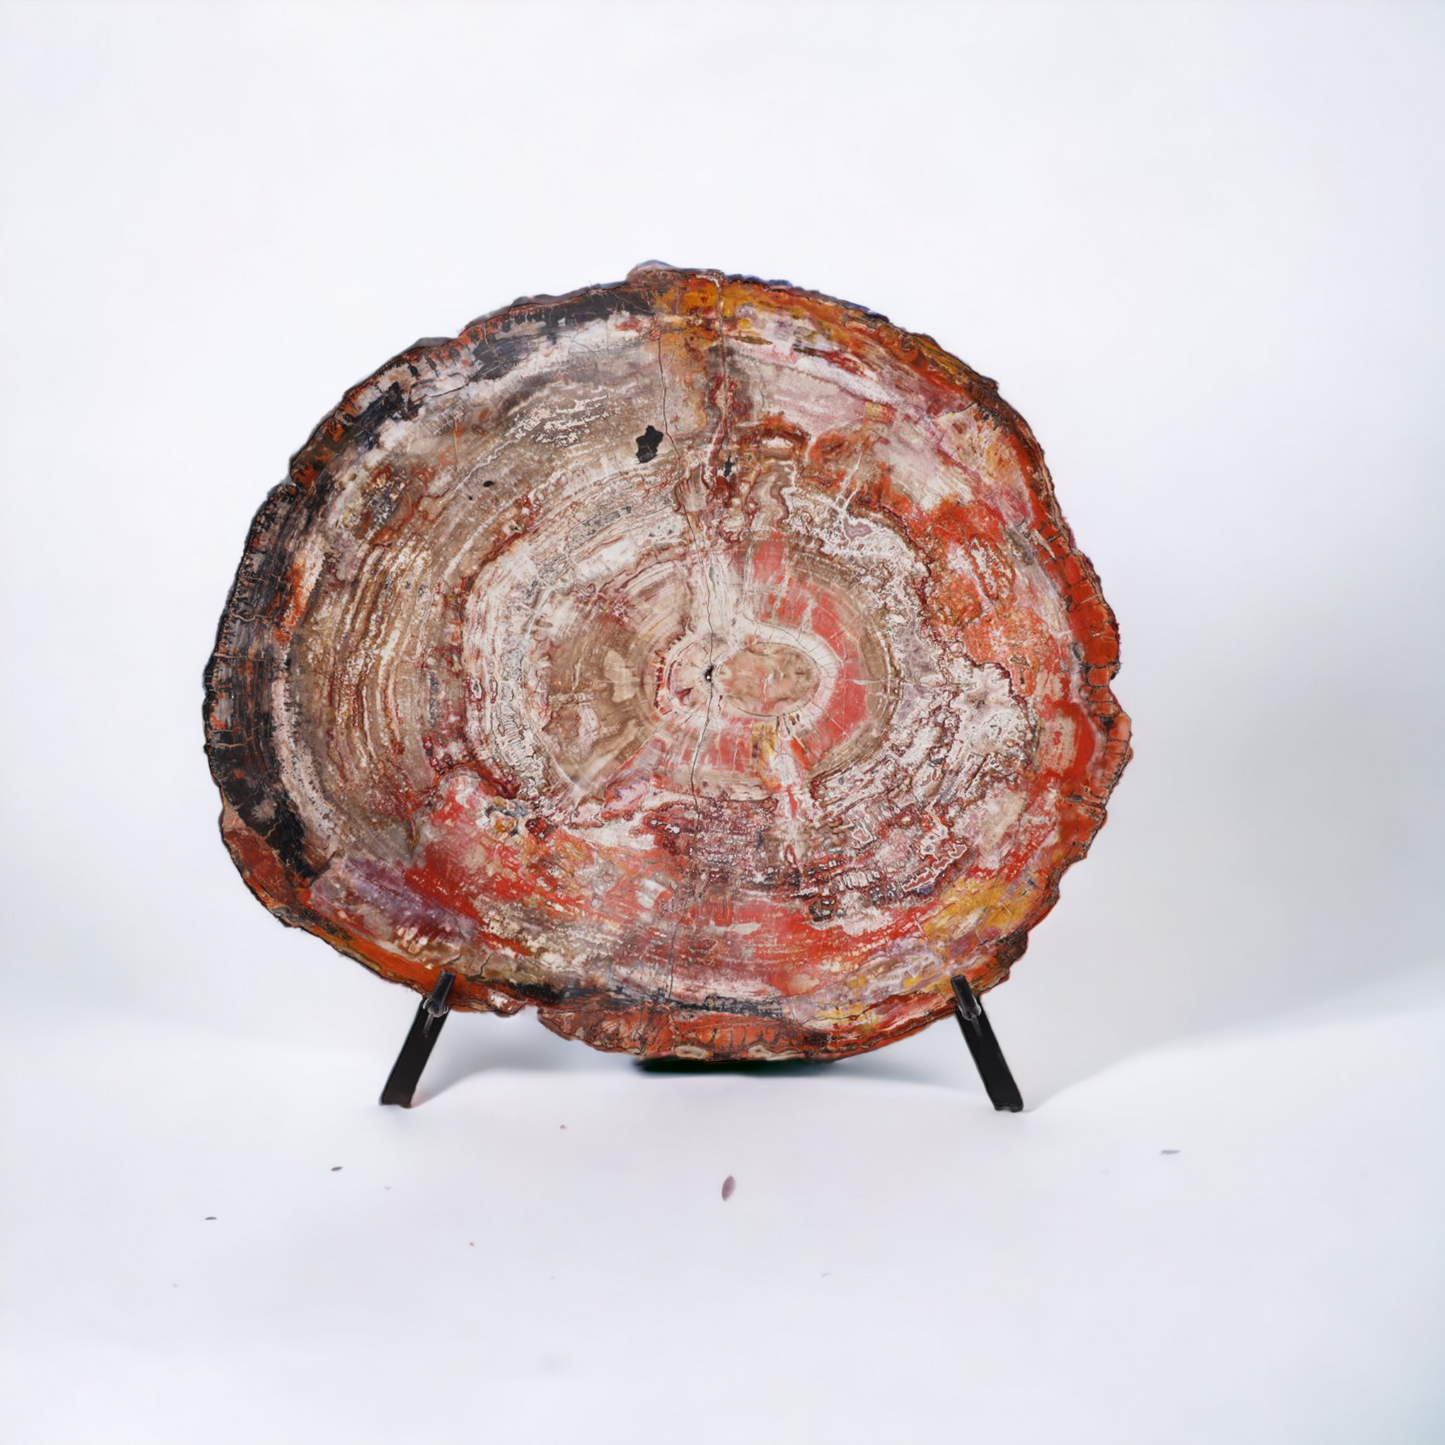 Petrified Wood Slice | Arizona, United States 